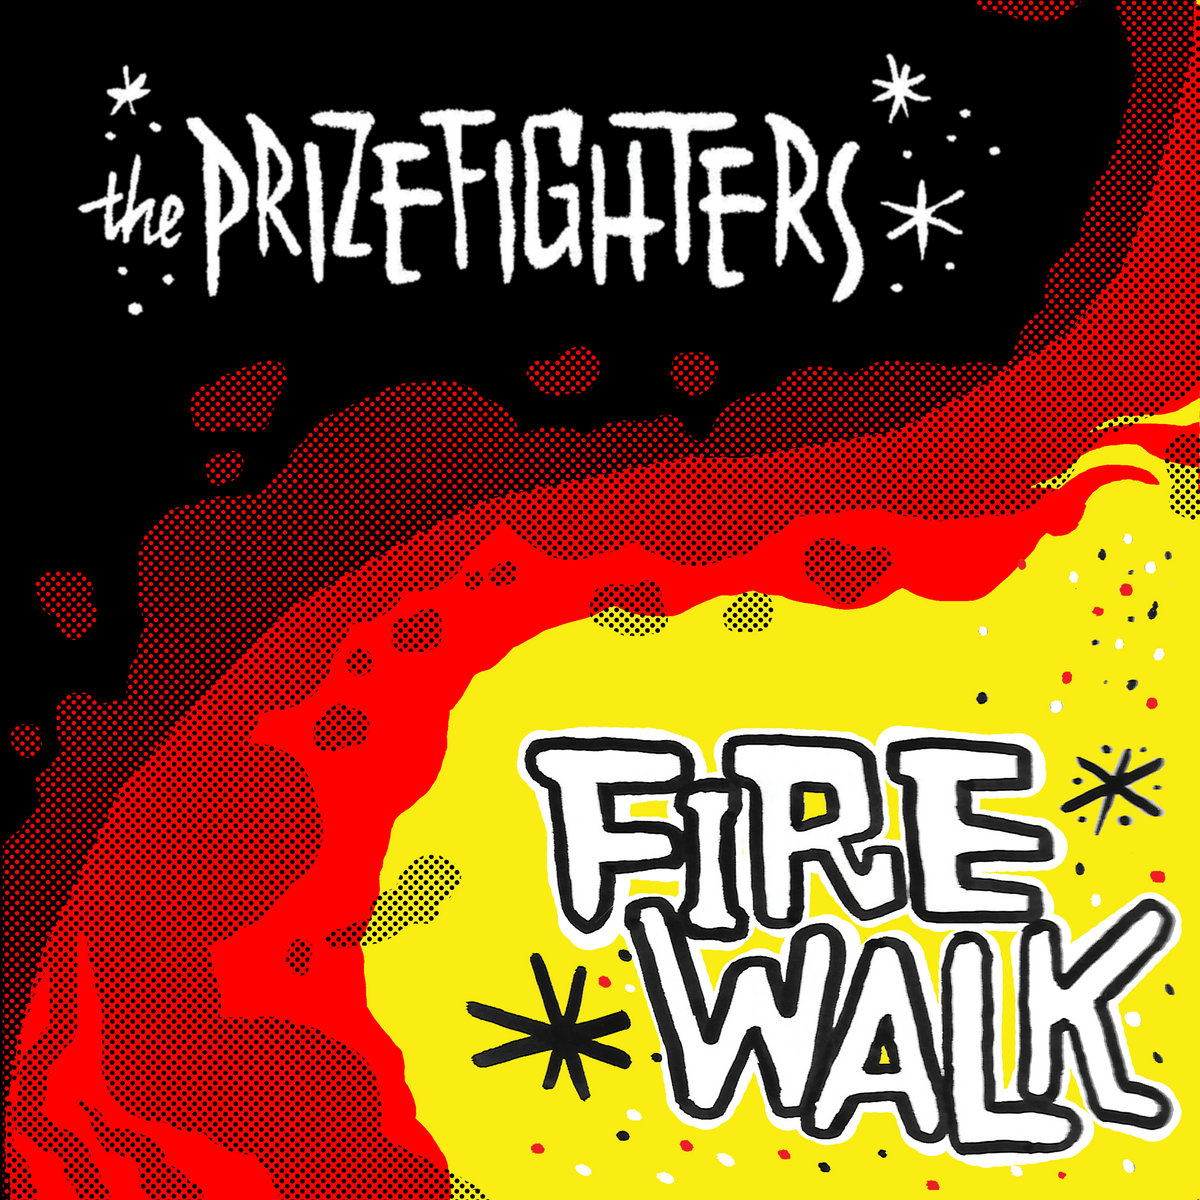 Résultat de recherche d'images pour "the prizefighter firewalk"